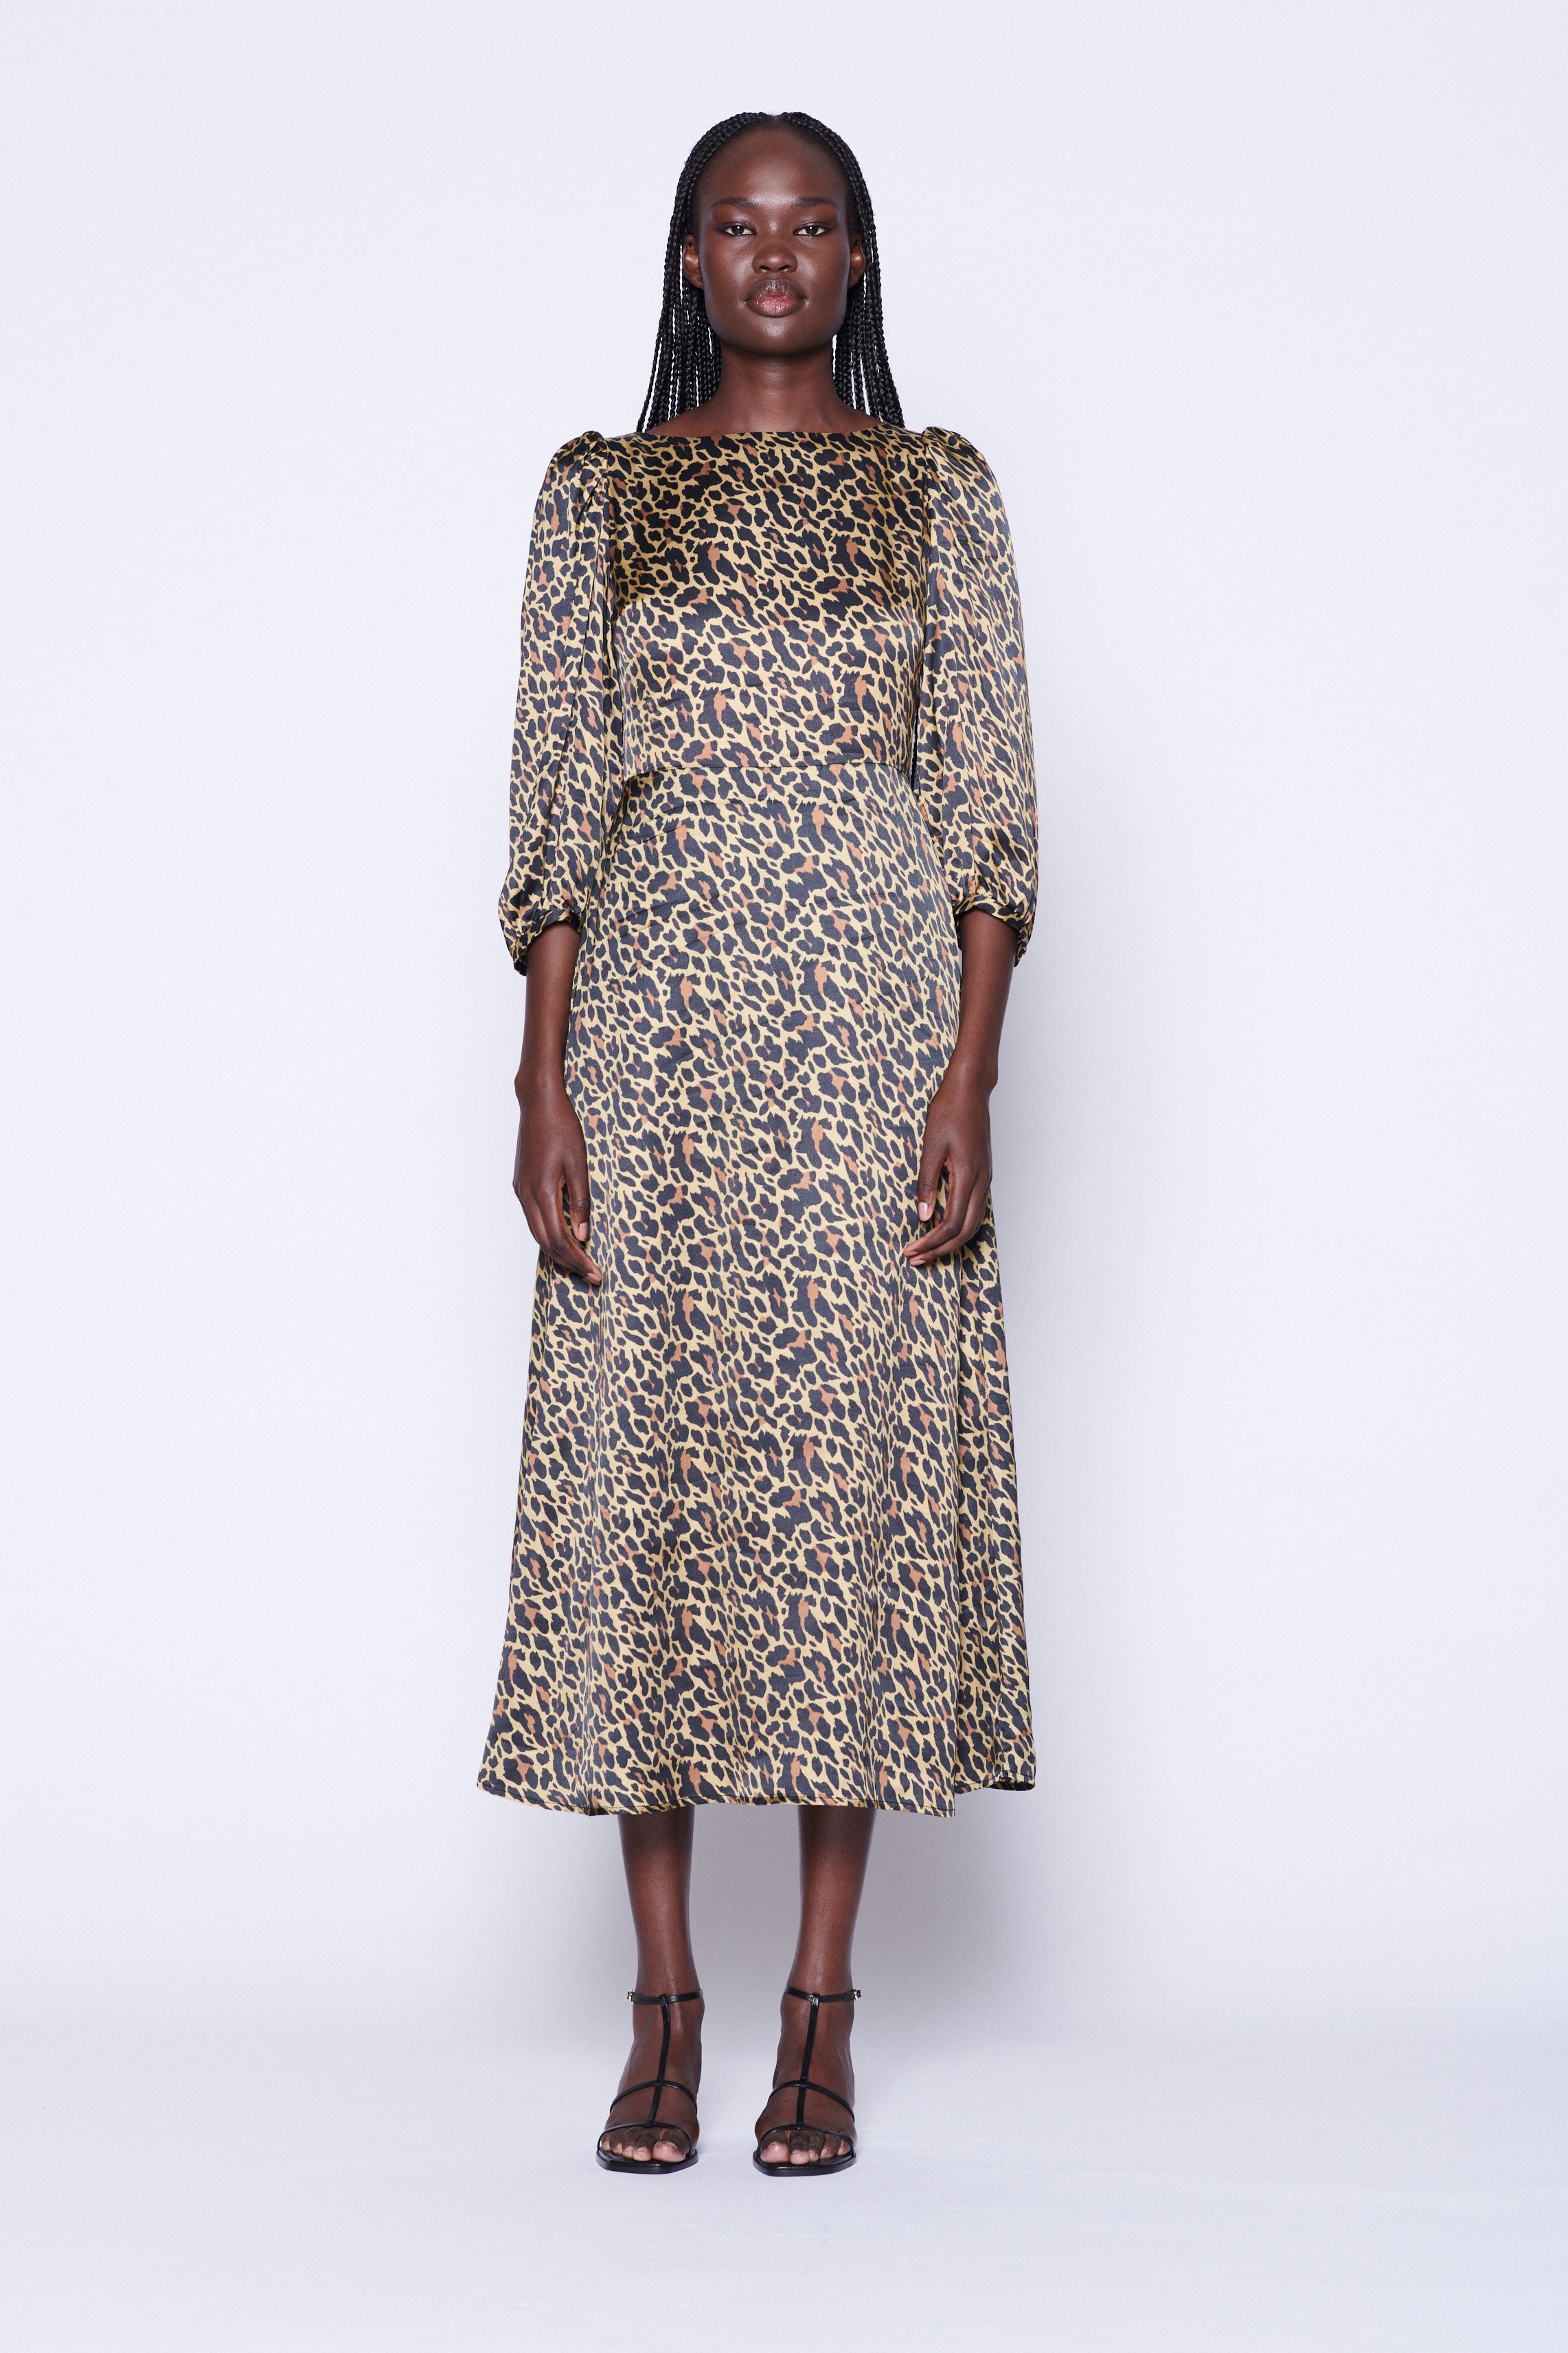 Zara leopard print satin dress